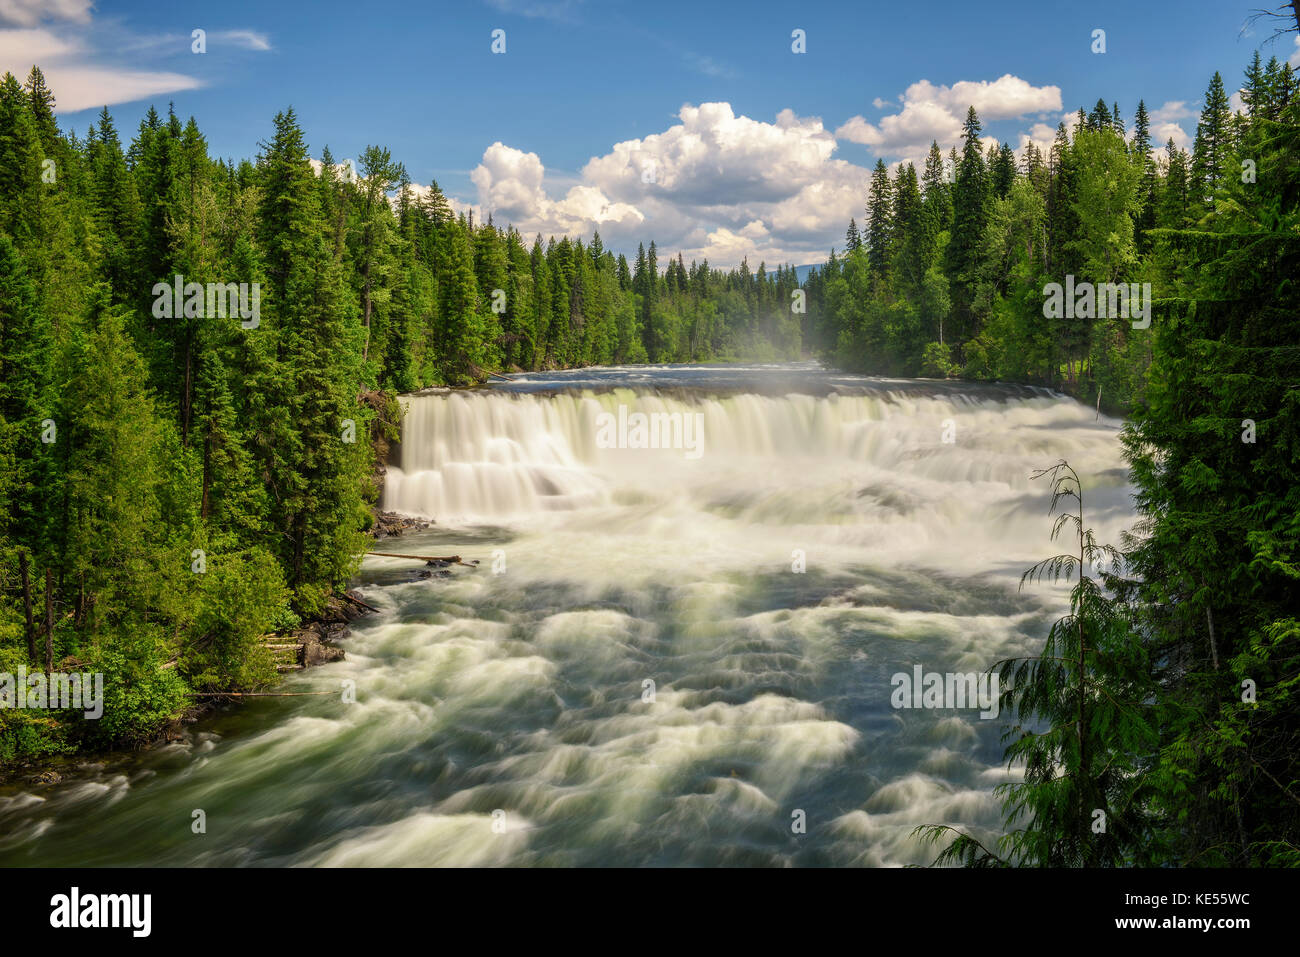 Dawson Falls on the Murtle River in Canada Stock Photo